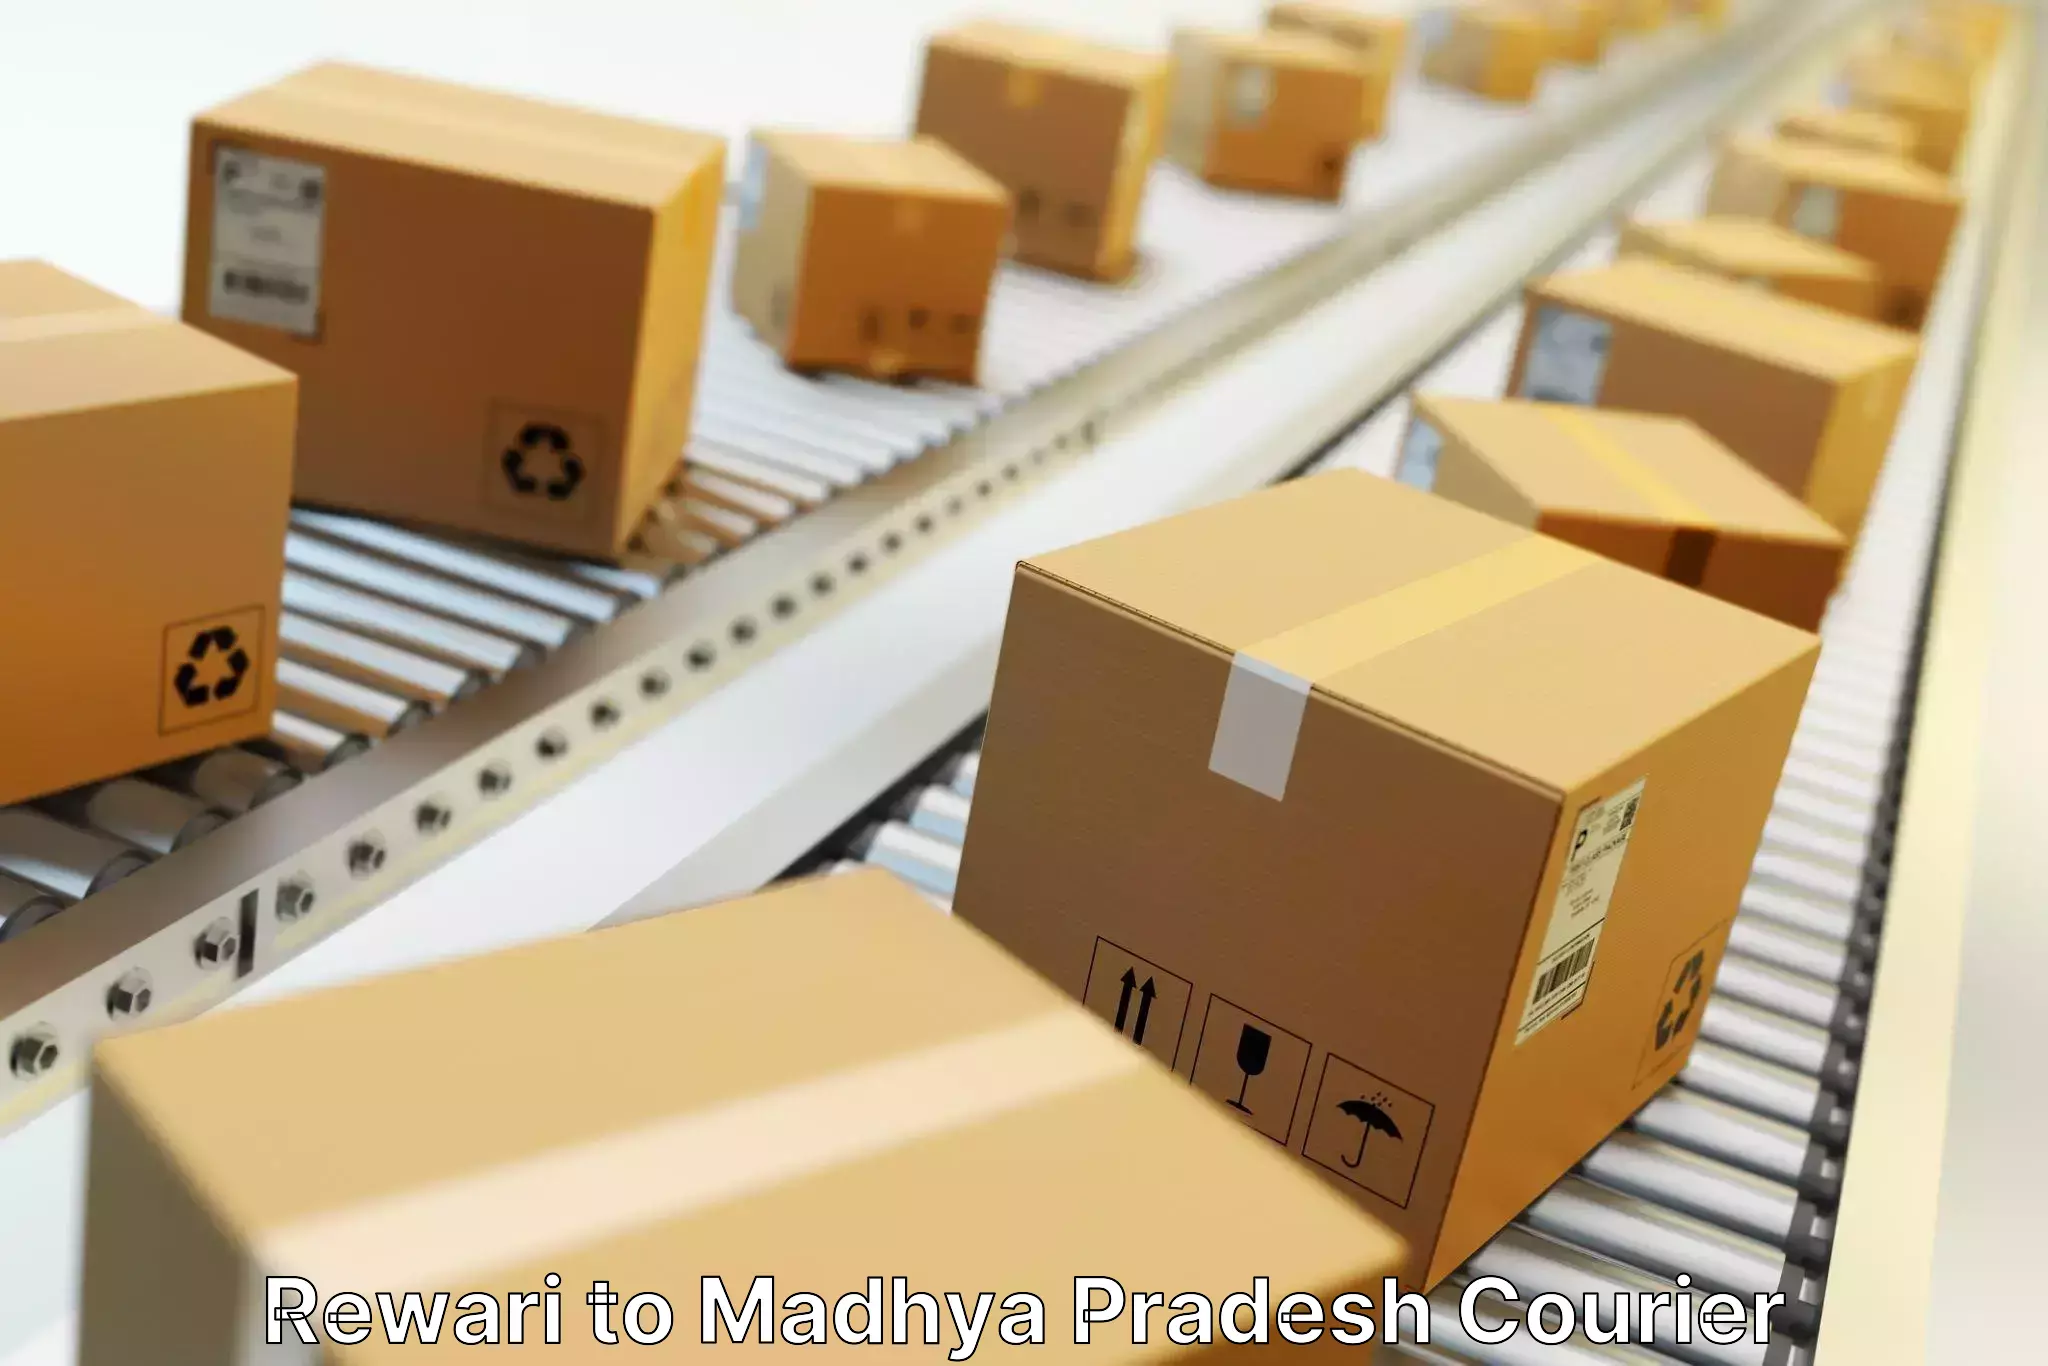 Cost-effective freight solutions Rewari to Madhya Pradesh